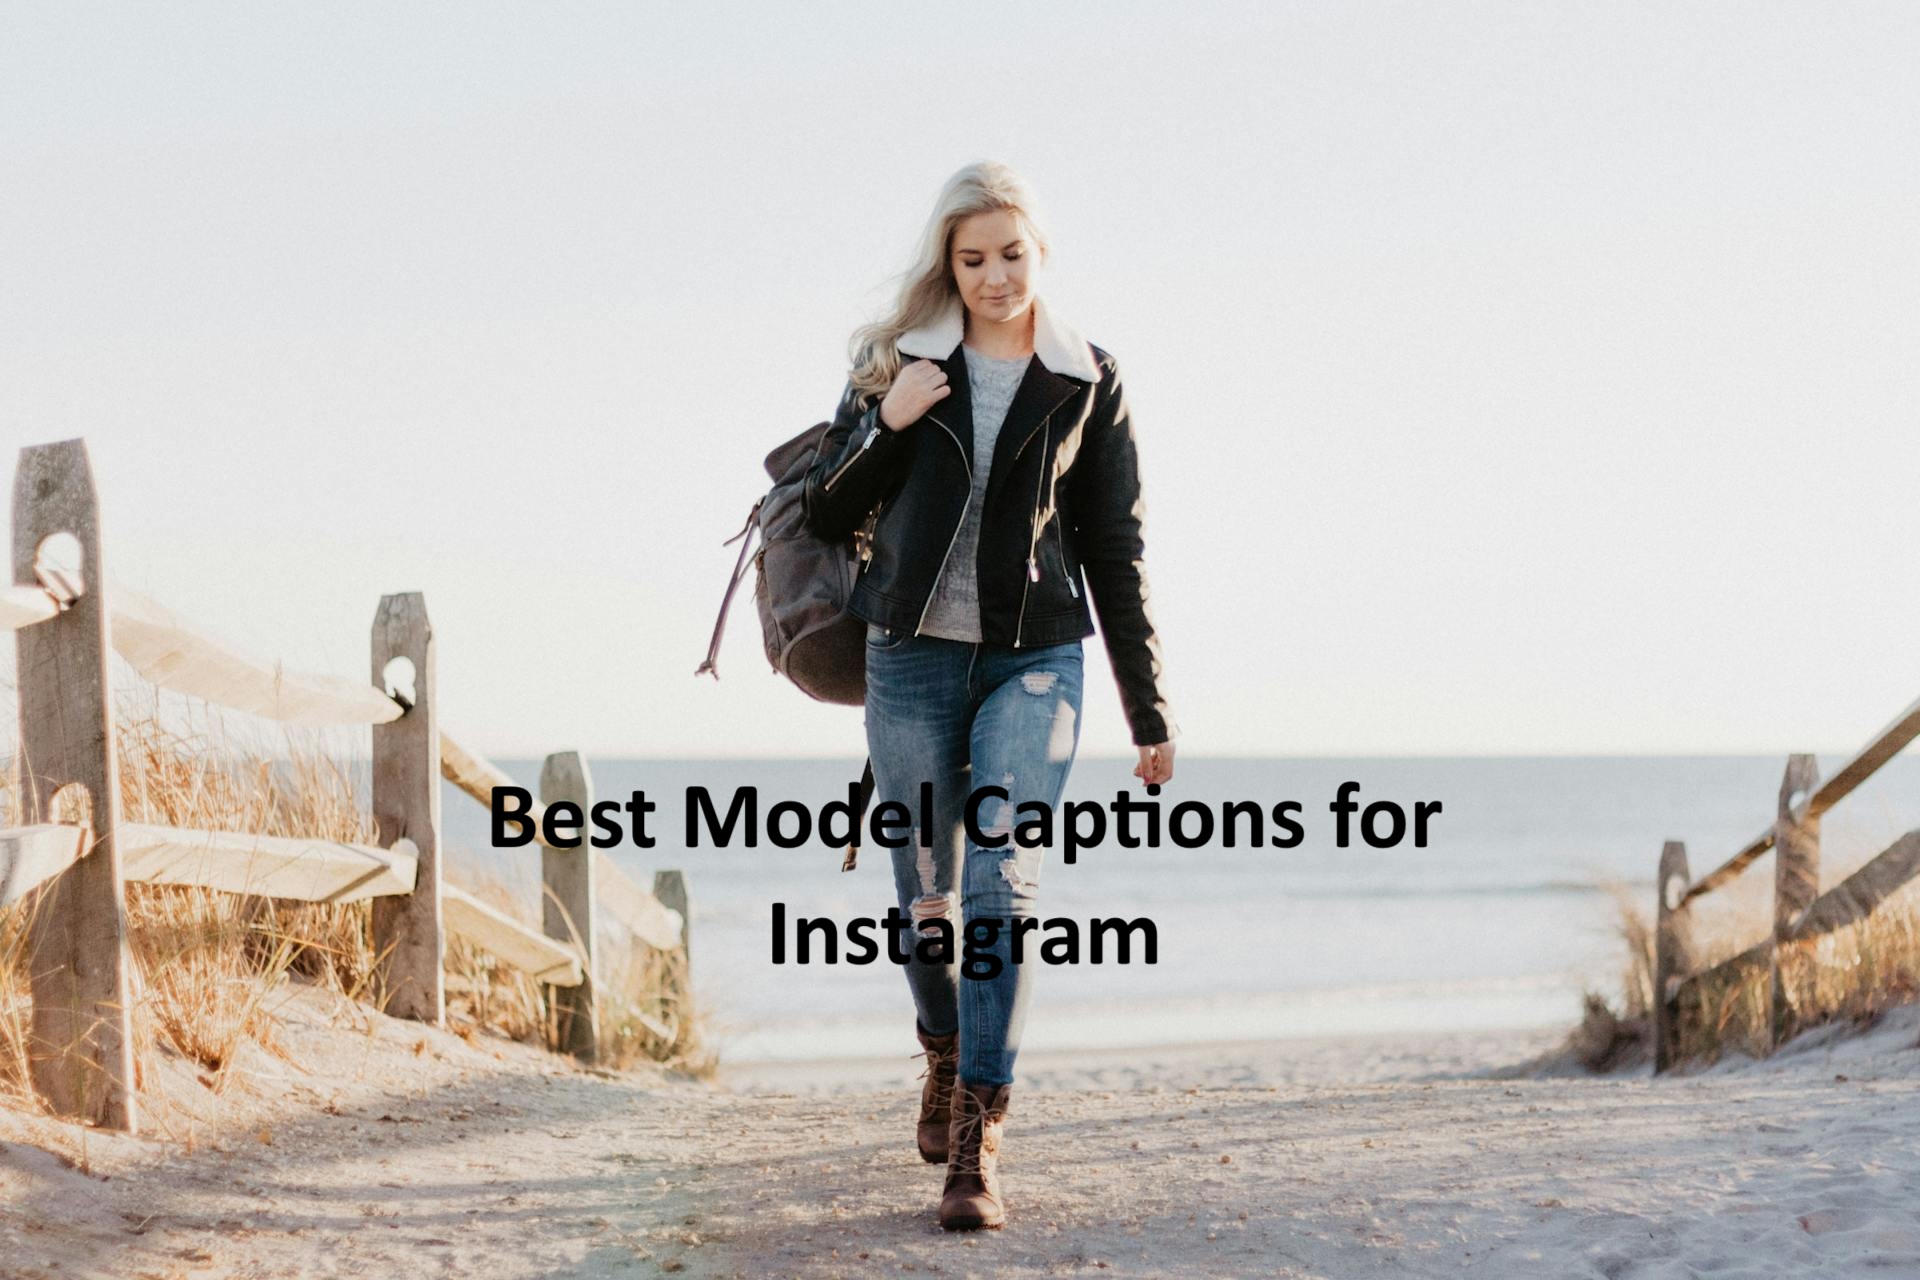 Model Captions for Instagram